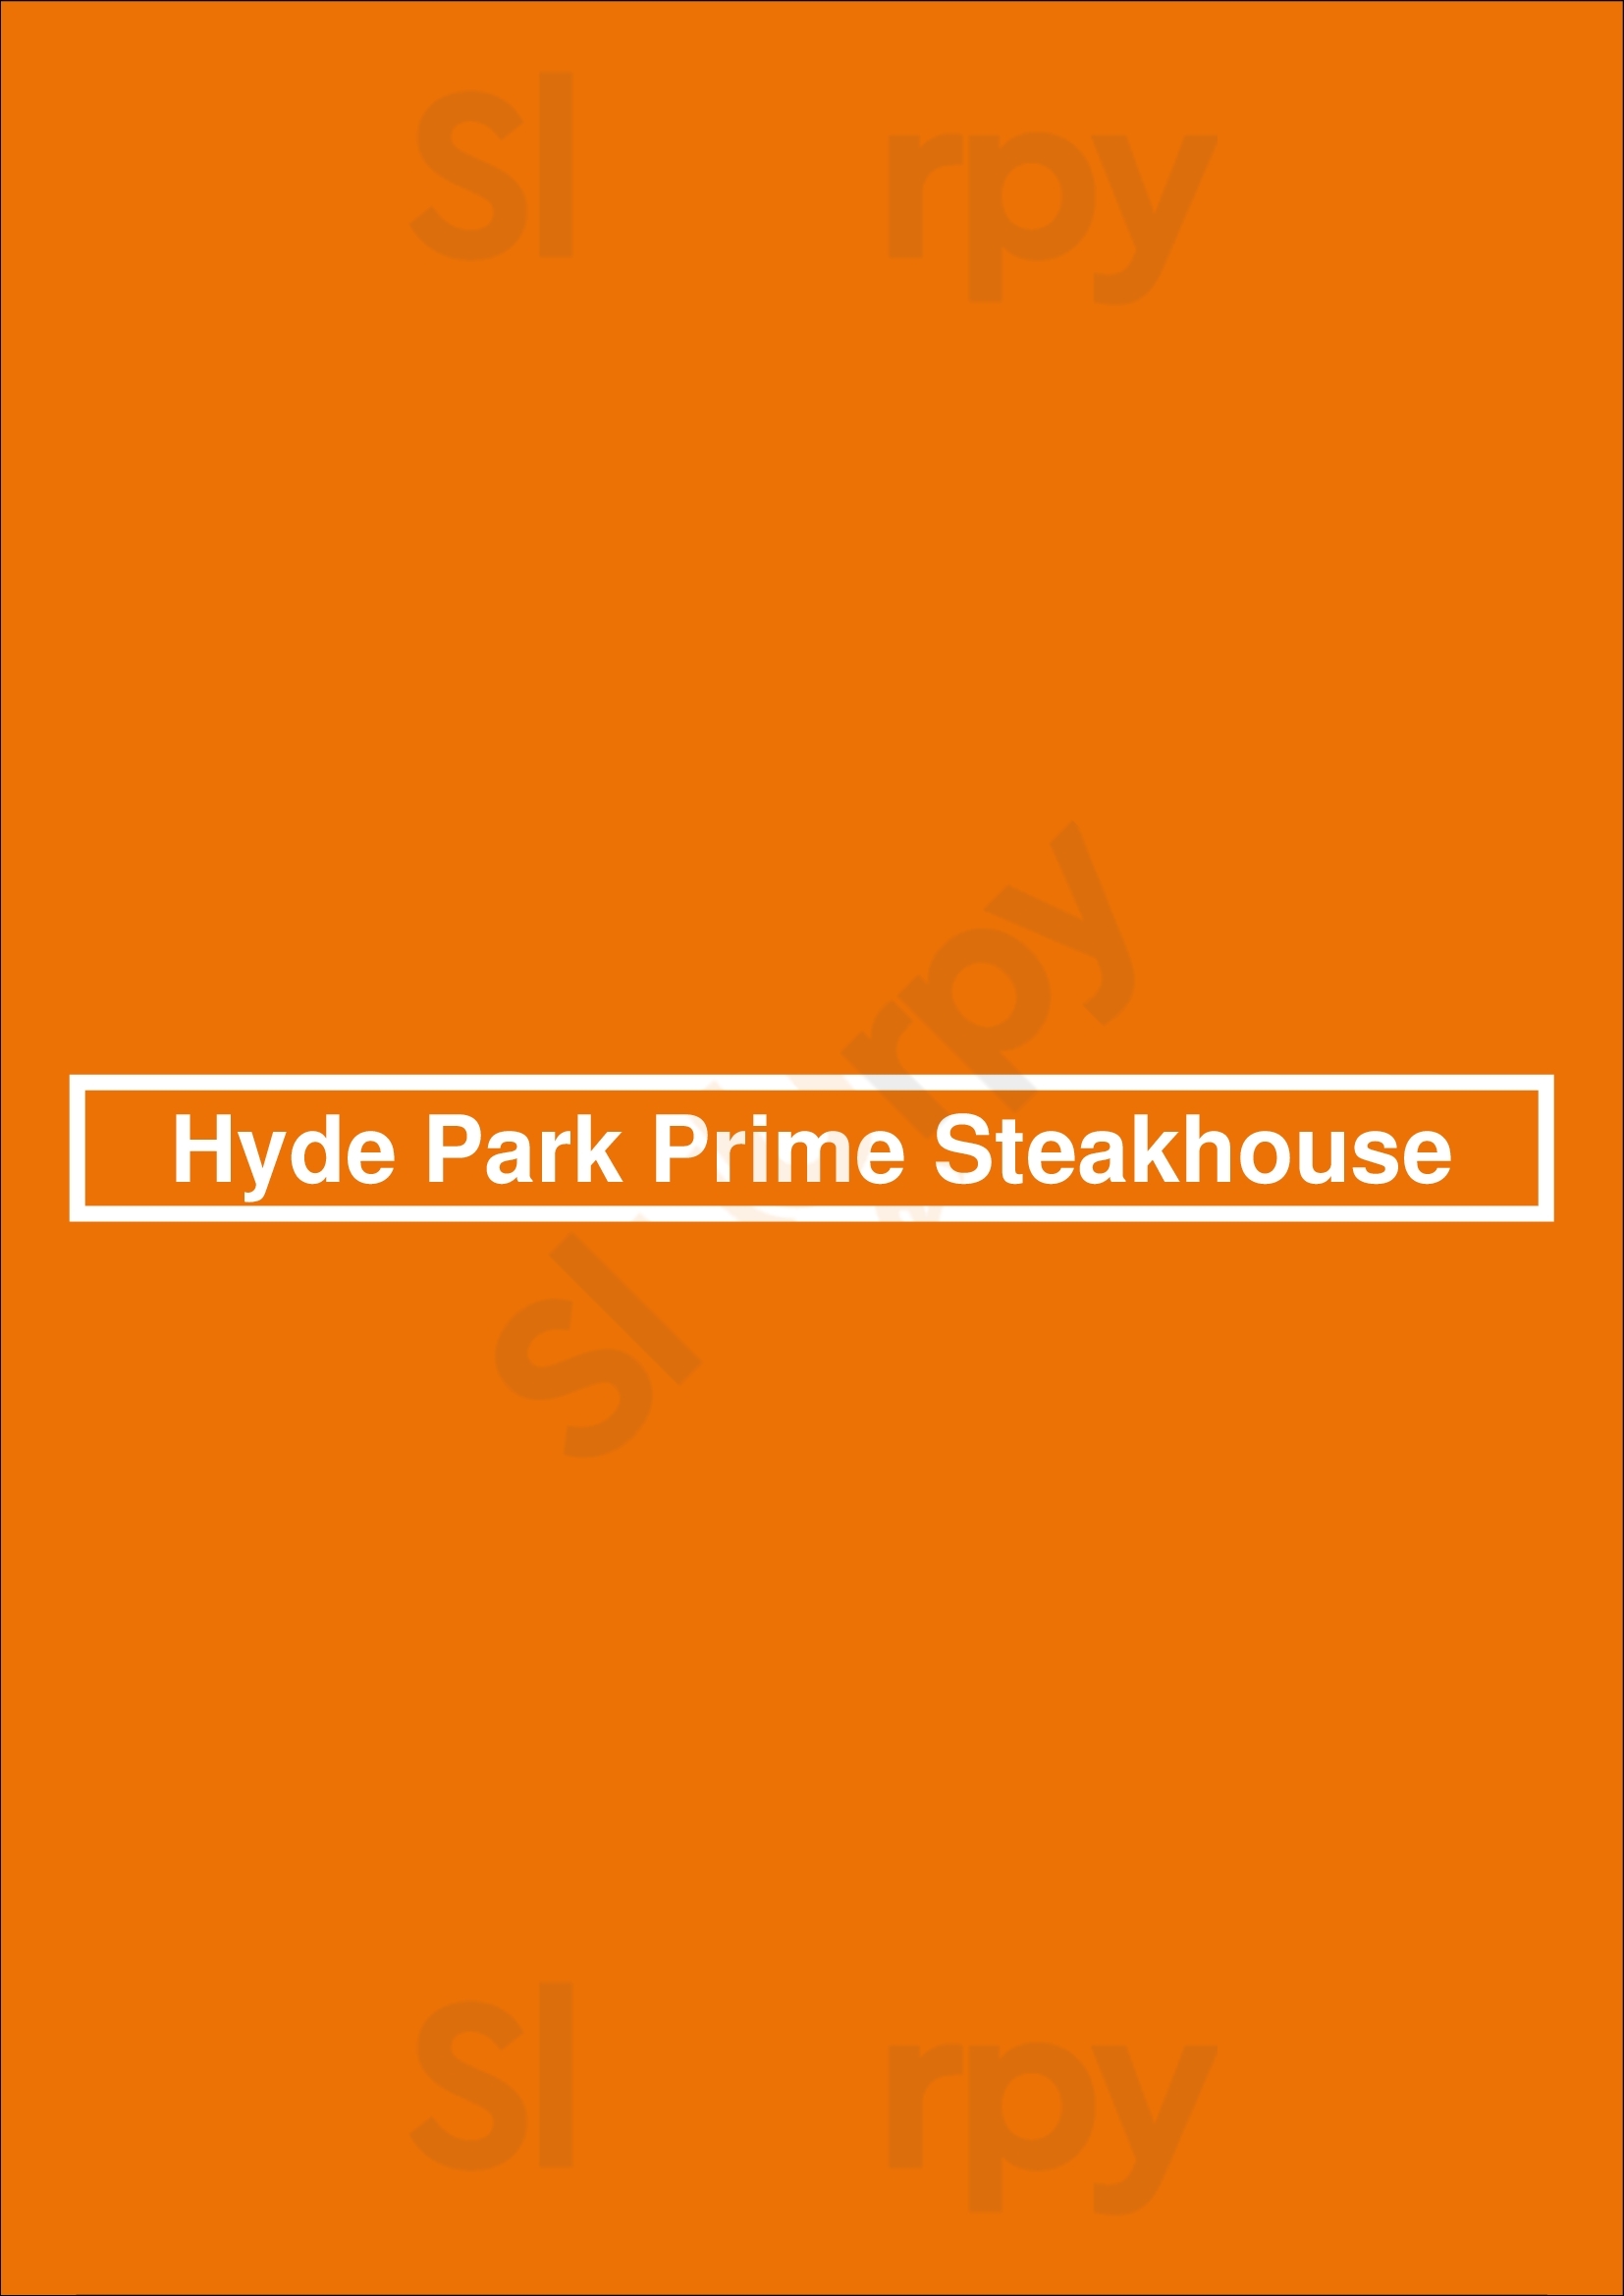 Hyde Park Prime Steakhouse Columbus Menu - 1